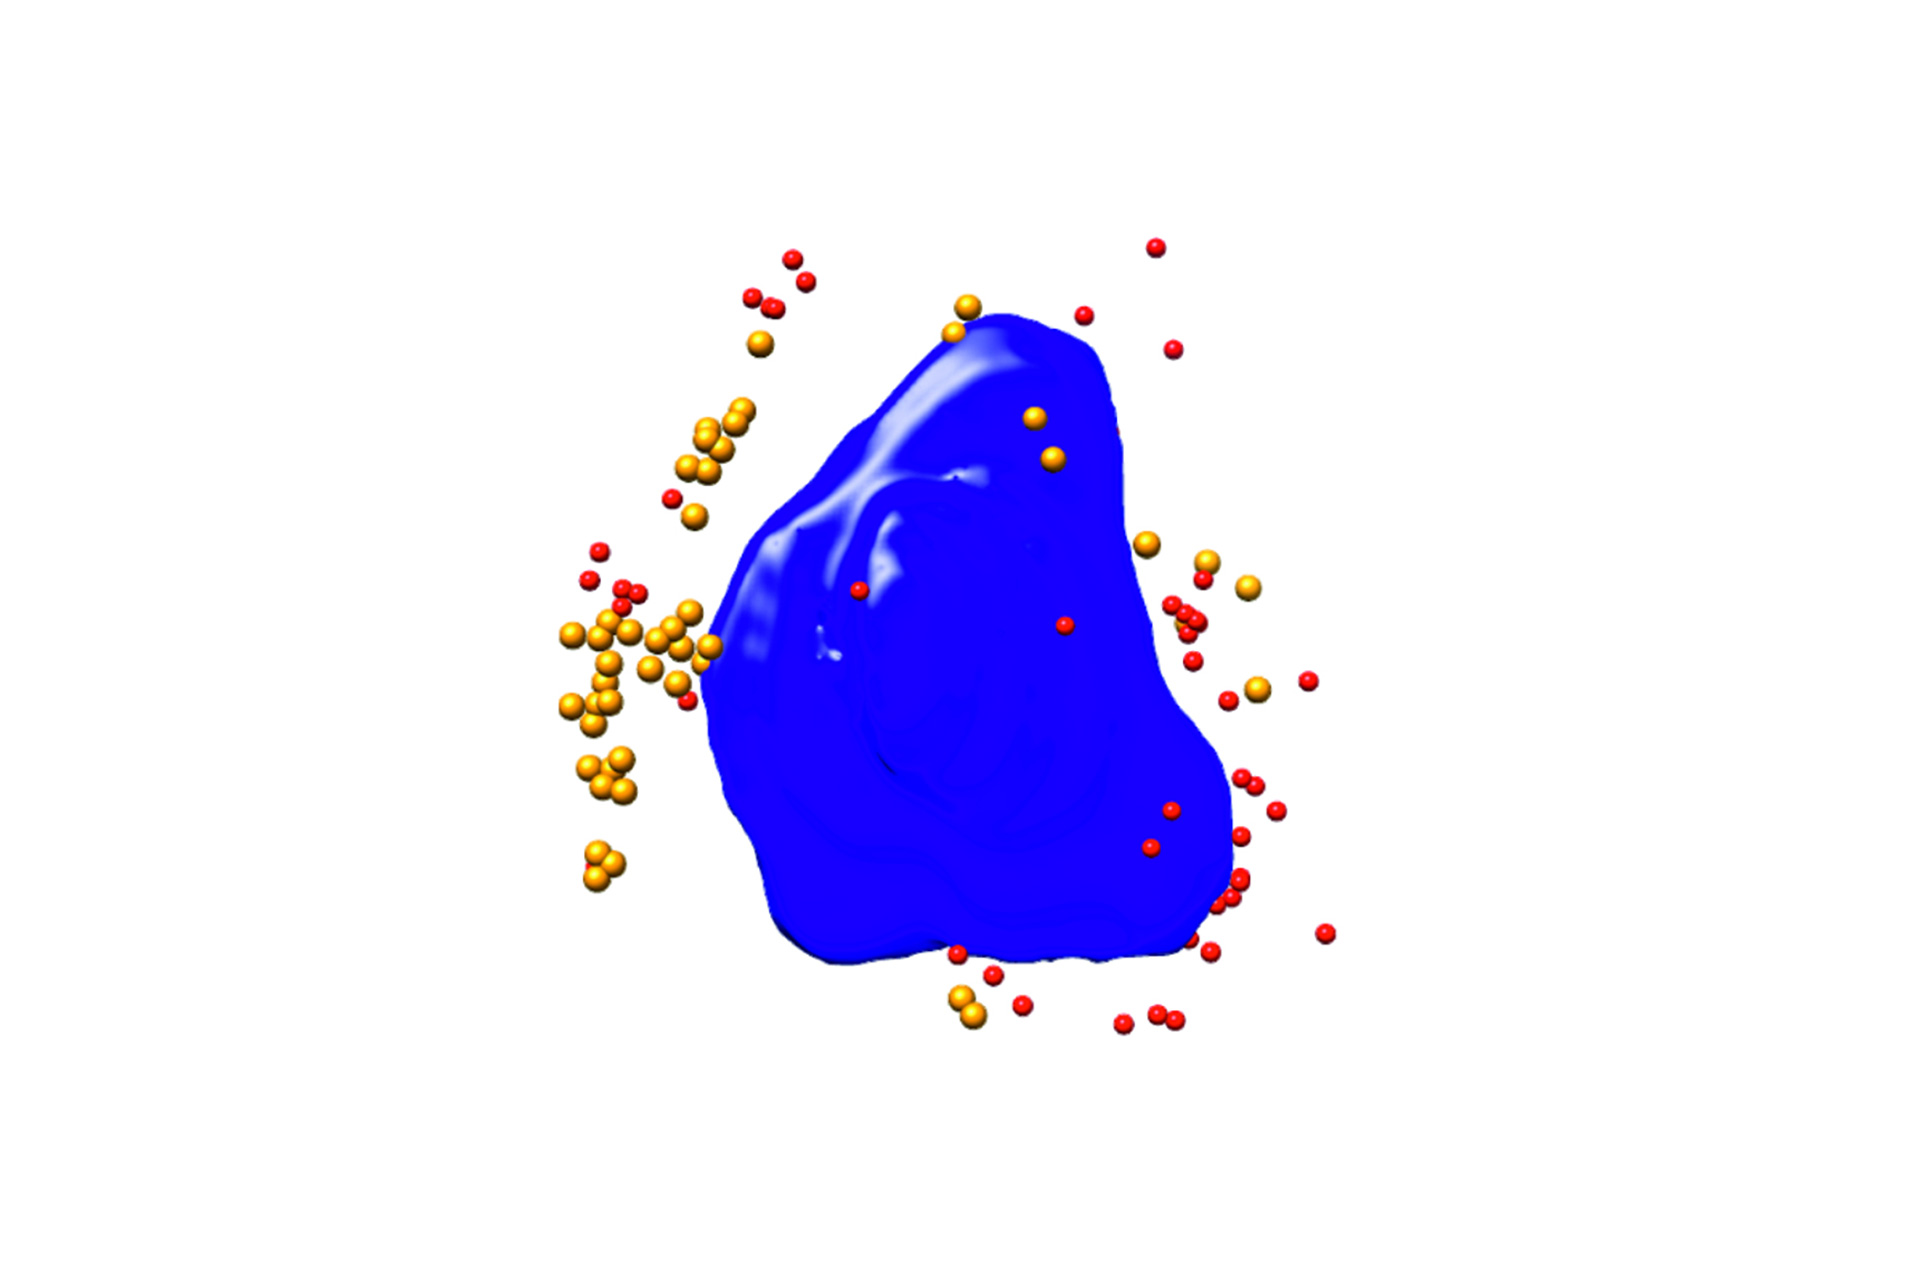 ウイルス感染Ptk2細胞のセグメンテーションされた3Dレンダリング。青：核、赤／オレンジ：ウイルス粒子、細胞幅：10 µm、Xradia 825 Synchrotron。画像ご提供：F.J. Chichon, CNB-CSIC and ALBA Synchrotron (Spain) 